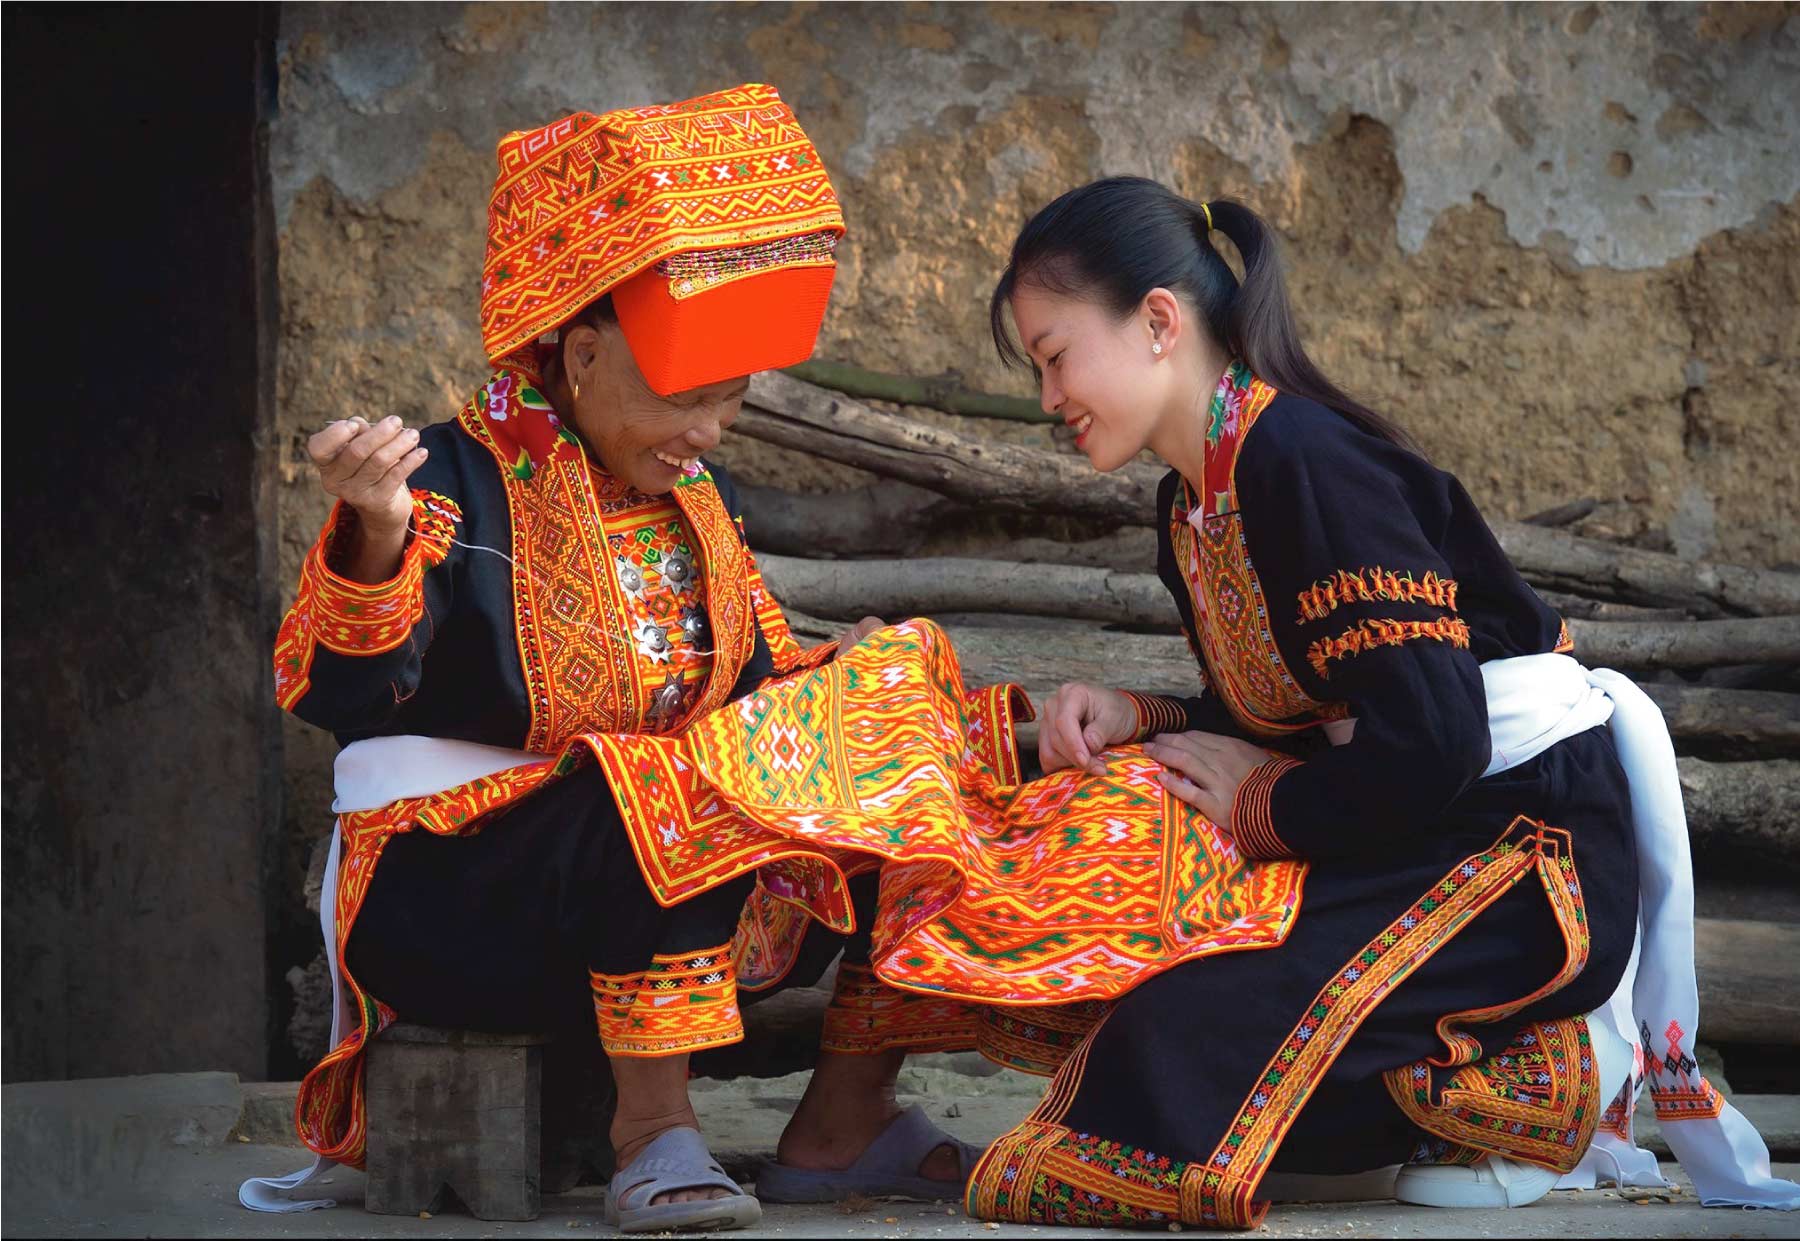 Đồ phụ nữ người Dao rất đa dạng, thường mặc áo dài, yếm, váy hoặc quần, y phục thêu rất cầu kỳ, sặc sỡ